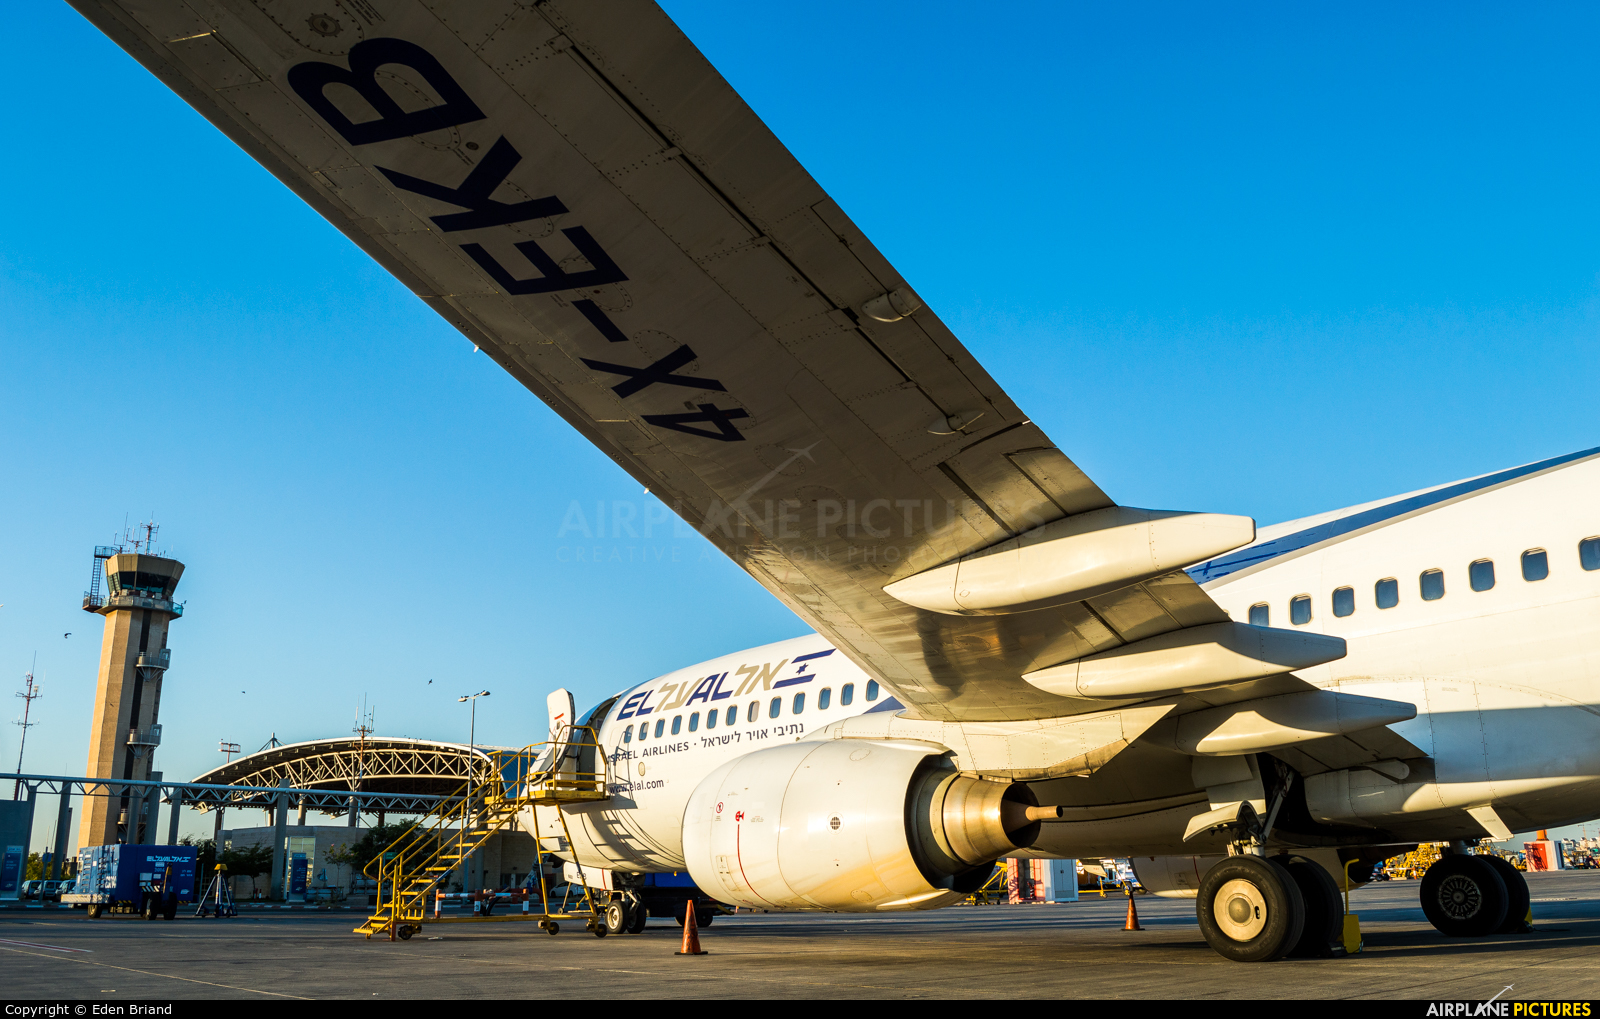 El Al Israel Airlines 4X-EKB aircraft at Tel Aviv - Ben Gurion